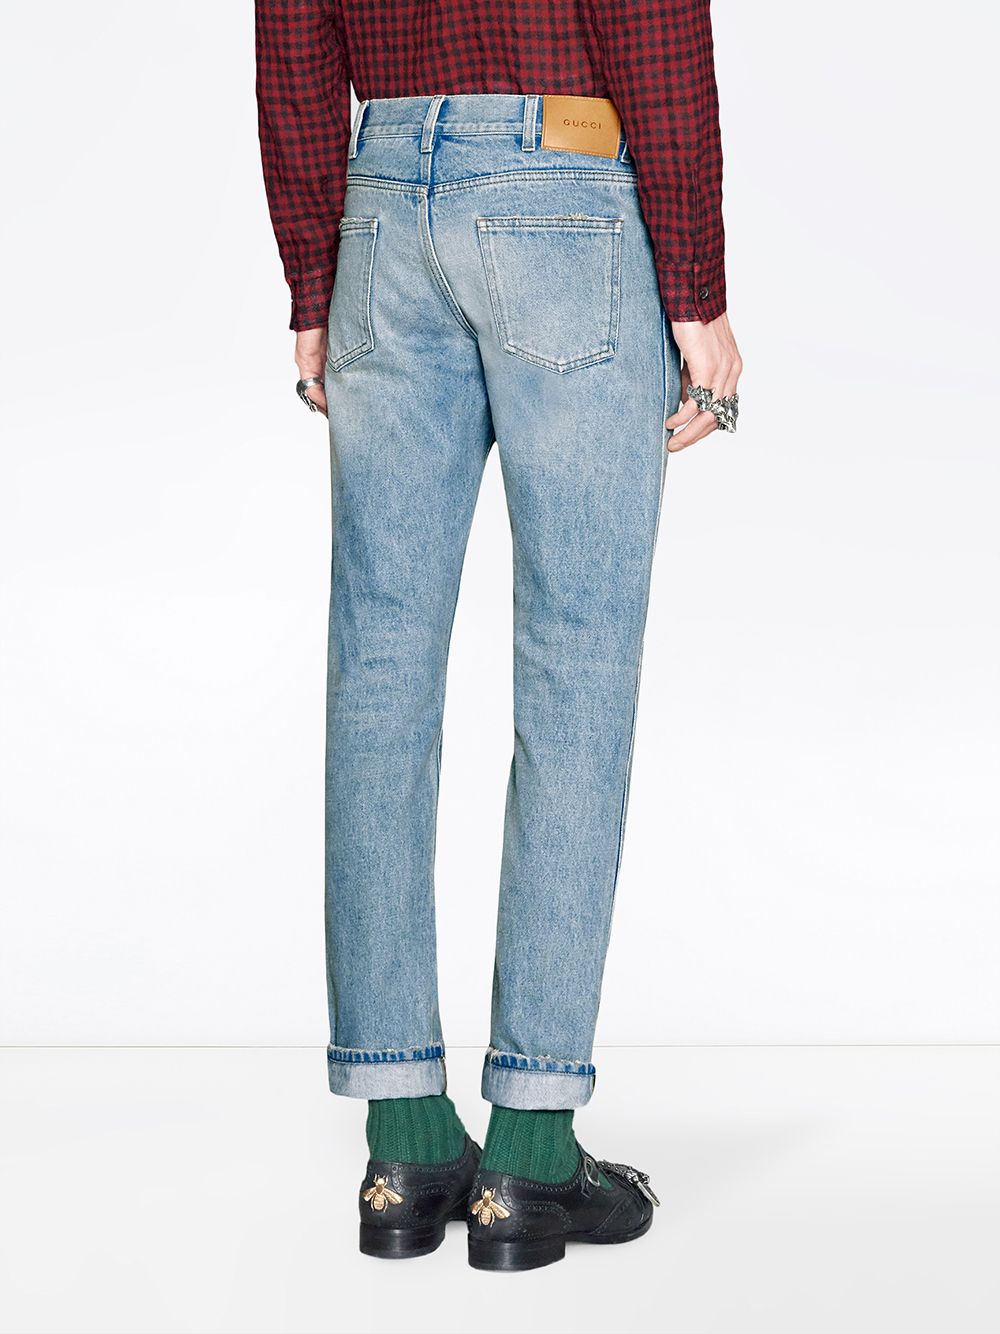 фото Gucci зауженные джинсы с отделкой web